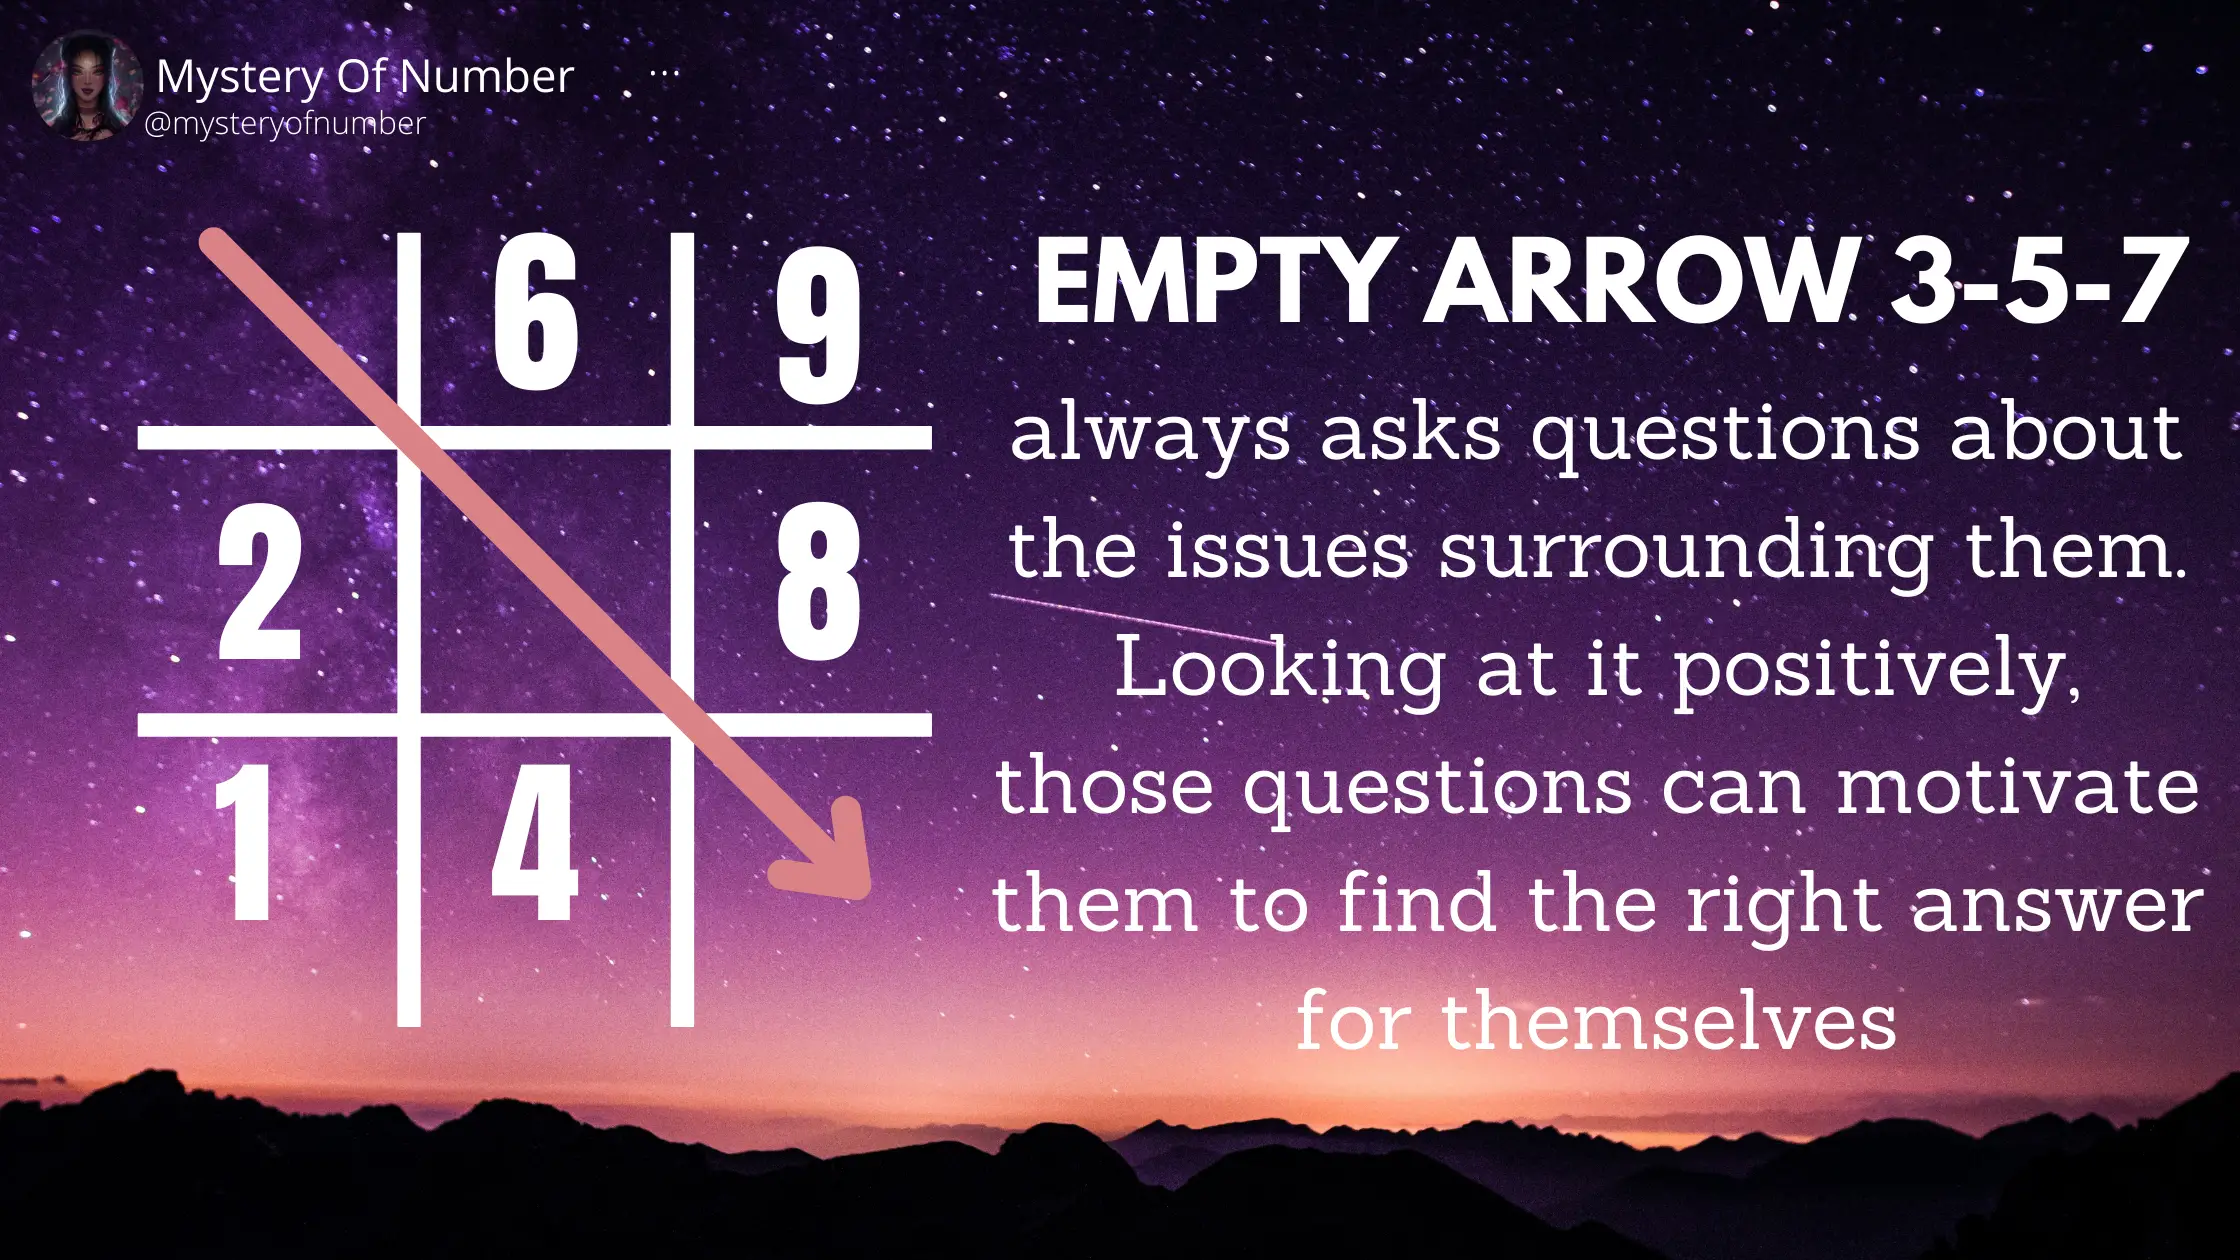 Empty arrow 3-5-7: Empty arrows in numerology